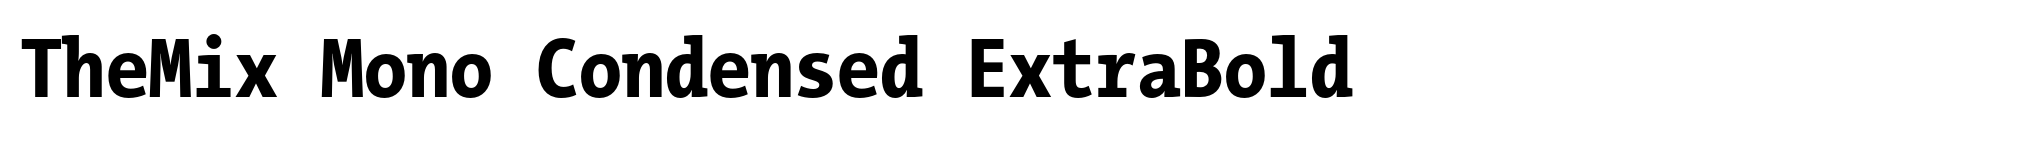 TheMix Mono Condensed ExtraBold image